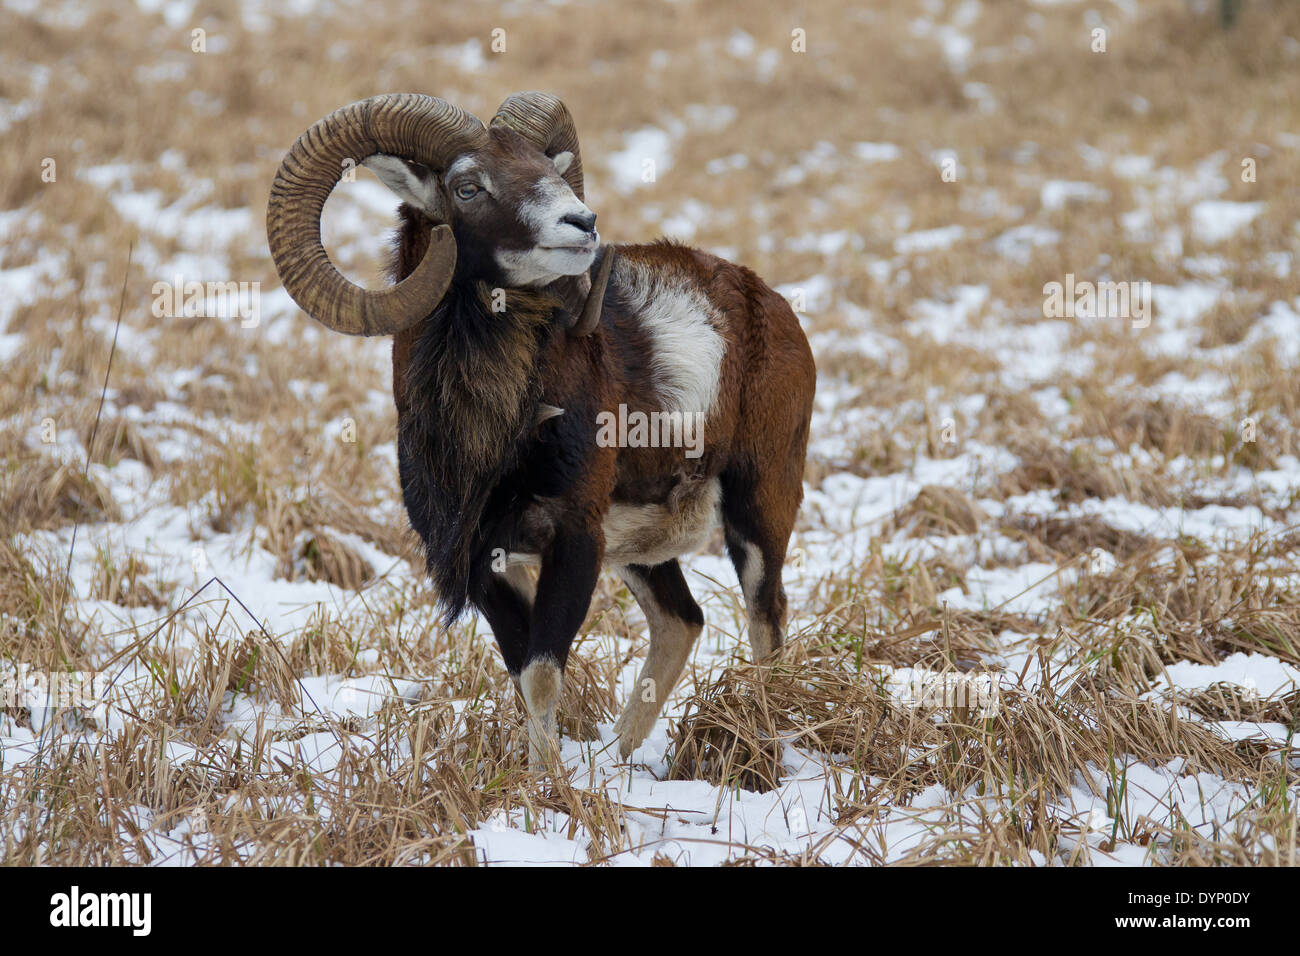 Mouflon (Ovis gmelini européenne / Ovis ammon musimon / Ovis orientalis musimon) ram dans la neige en hiver Banque D'Images